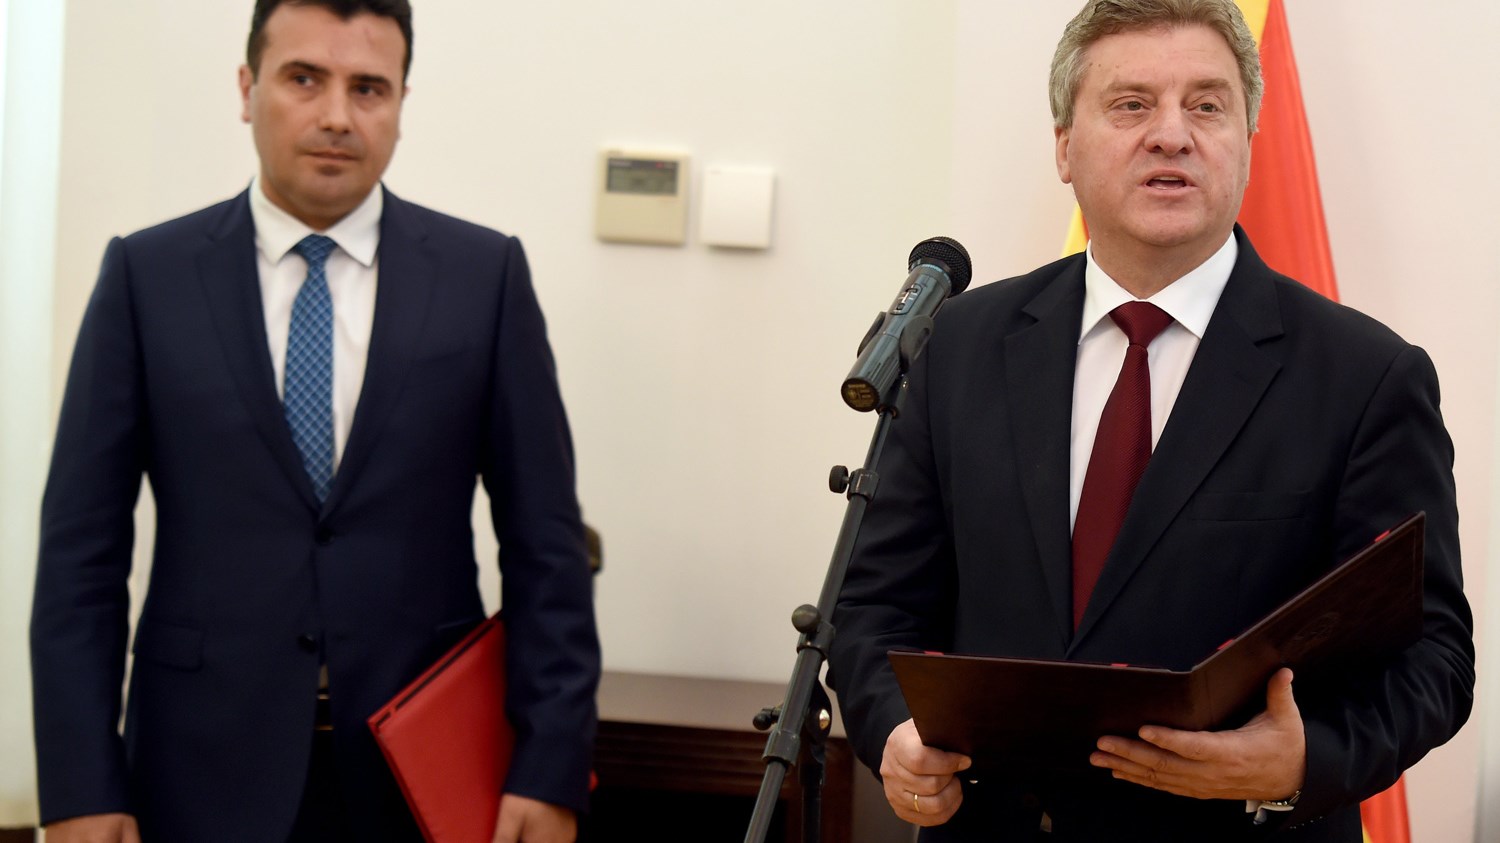 “Χοντραίνει” η κόντρα Ιβάνοφ – Ζάεφ στα Σκόπια: Ανακοίνωση κατά του Προέδρου από την κυβέρνηση της ΠΓΔΜ